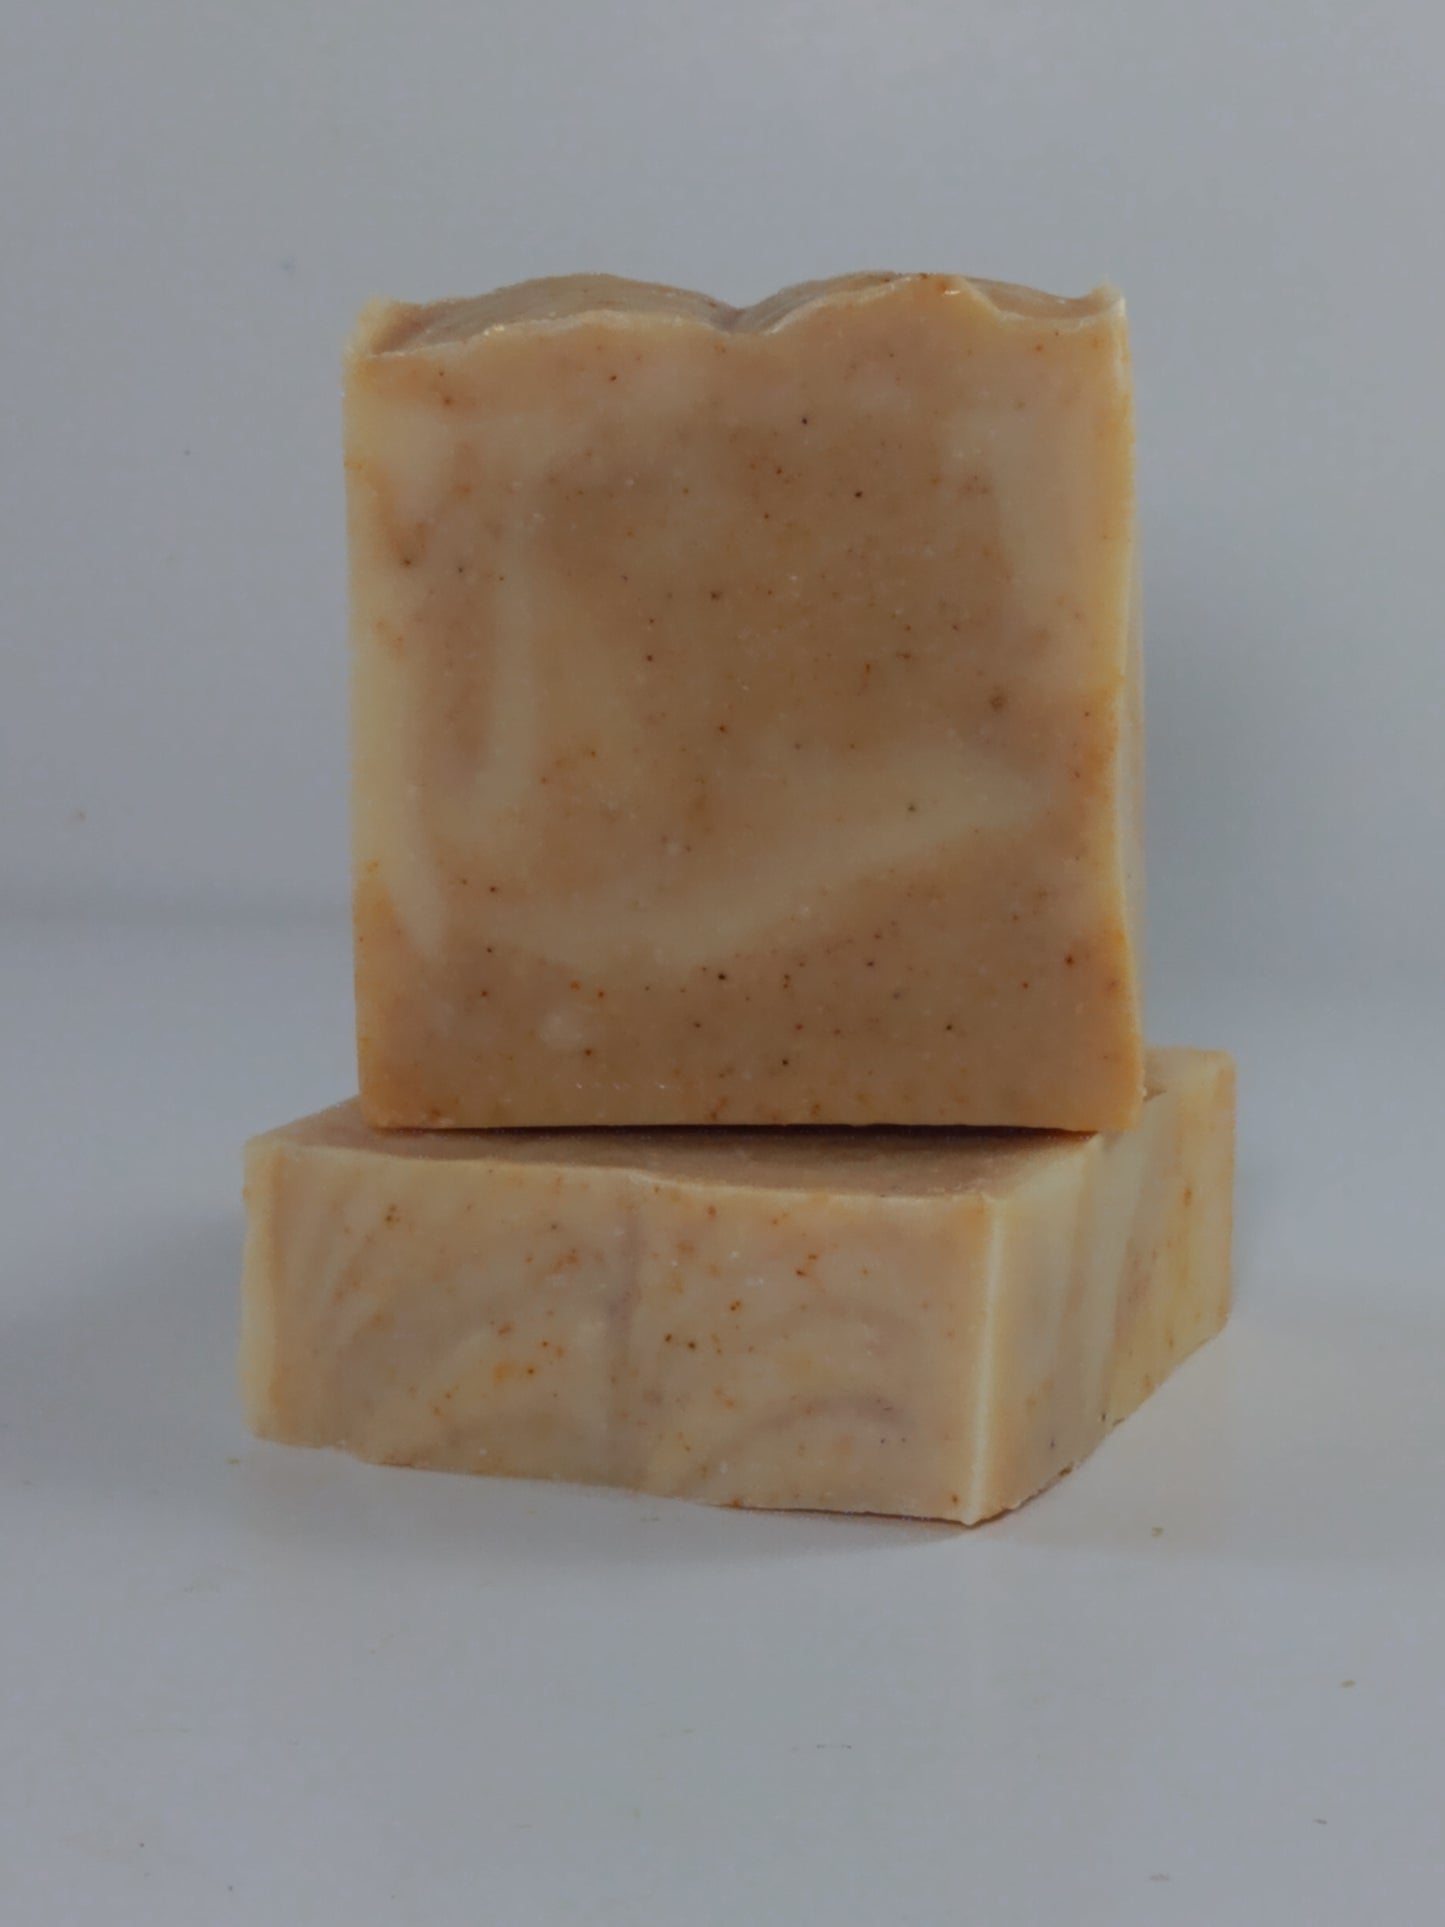 Cinnamon Spice Soap